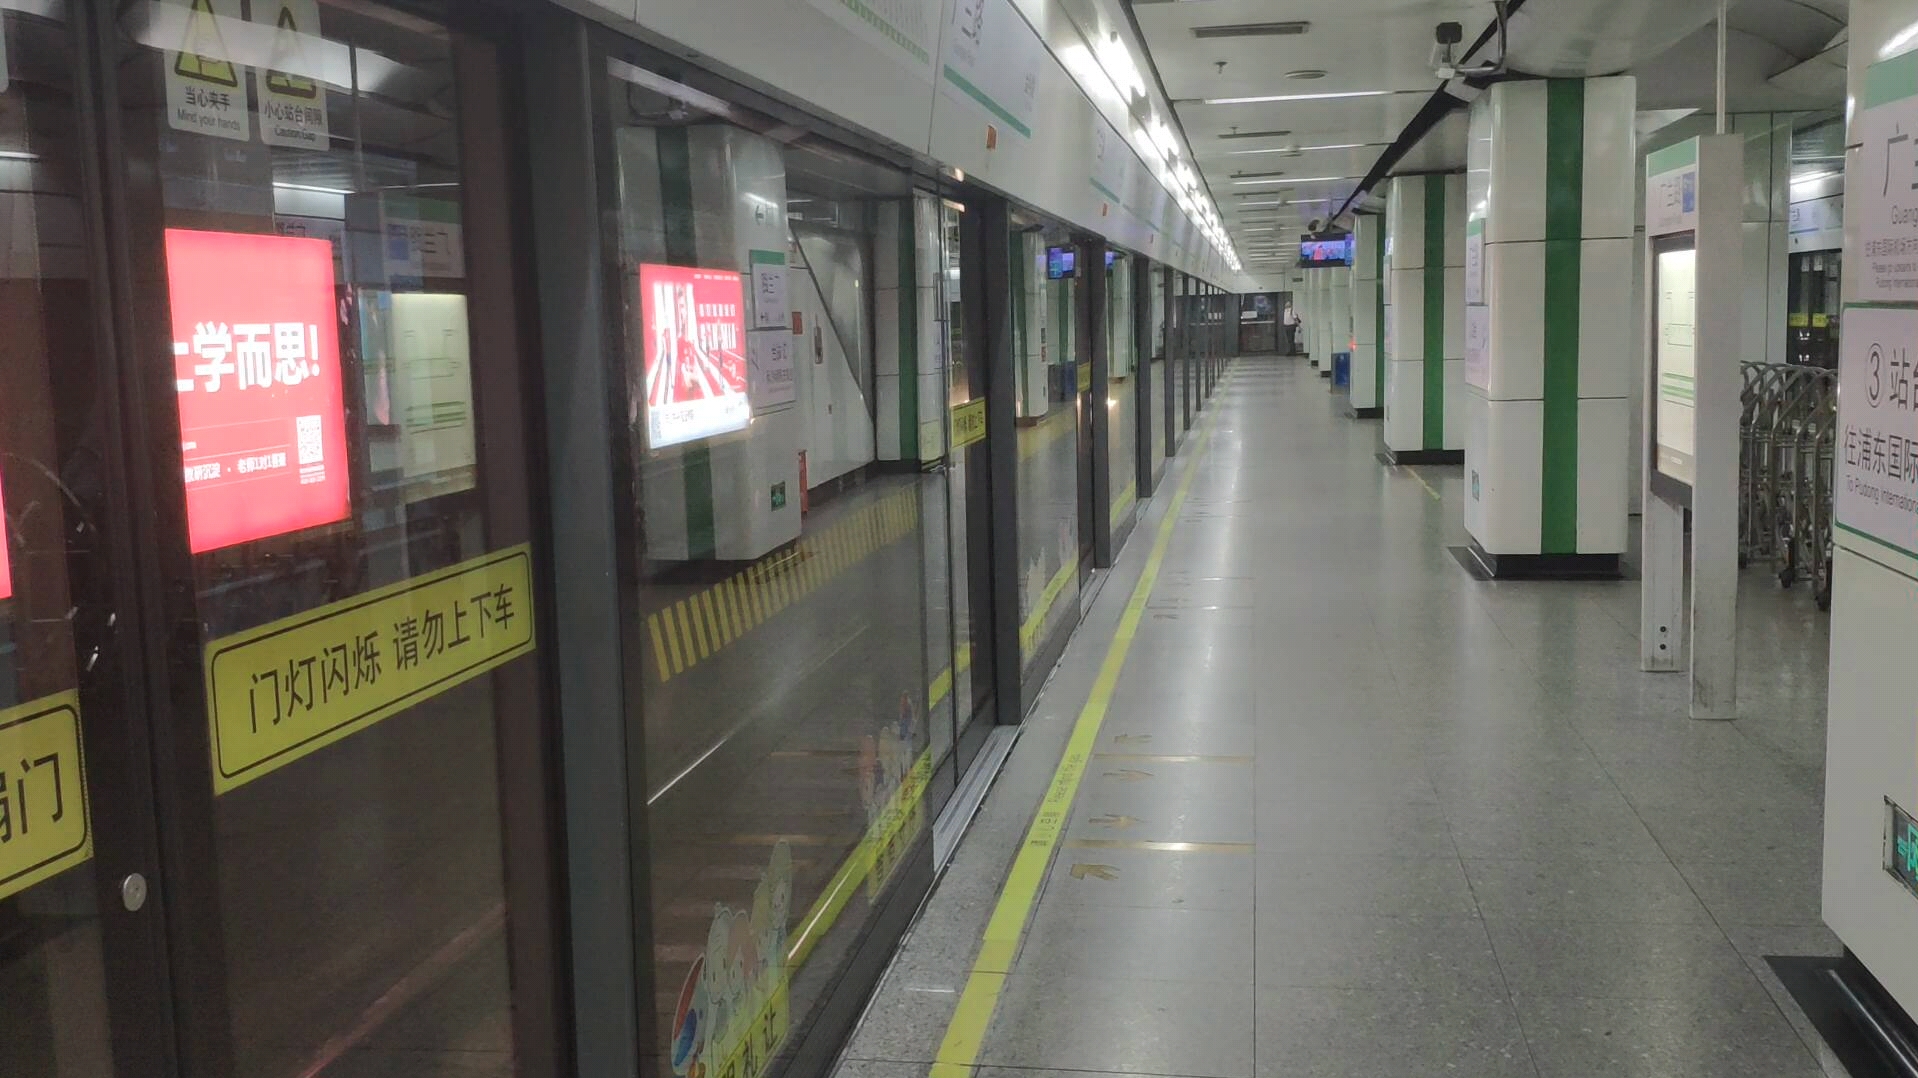 上海地铁2号线02a03型列车青鲶鱼0262号车到达广兰路站2号站台终点站